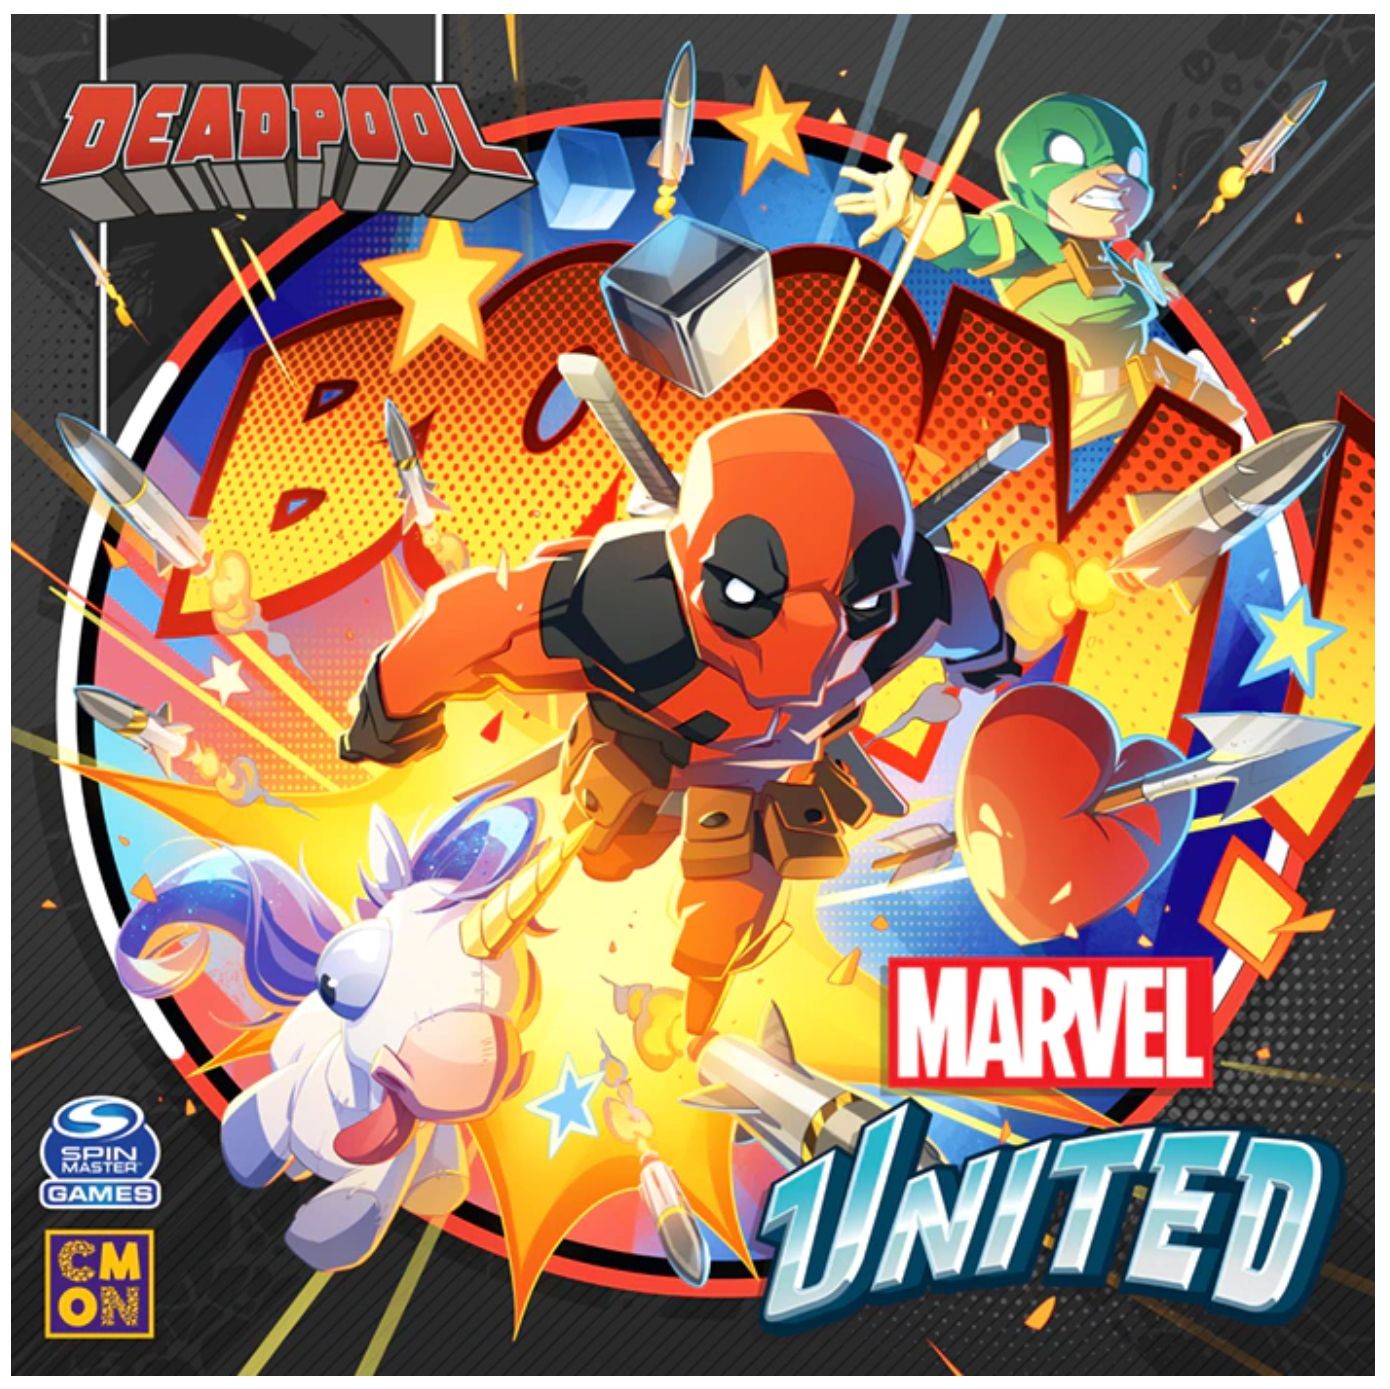 Marvel United: Deadpool (English Edition)